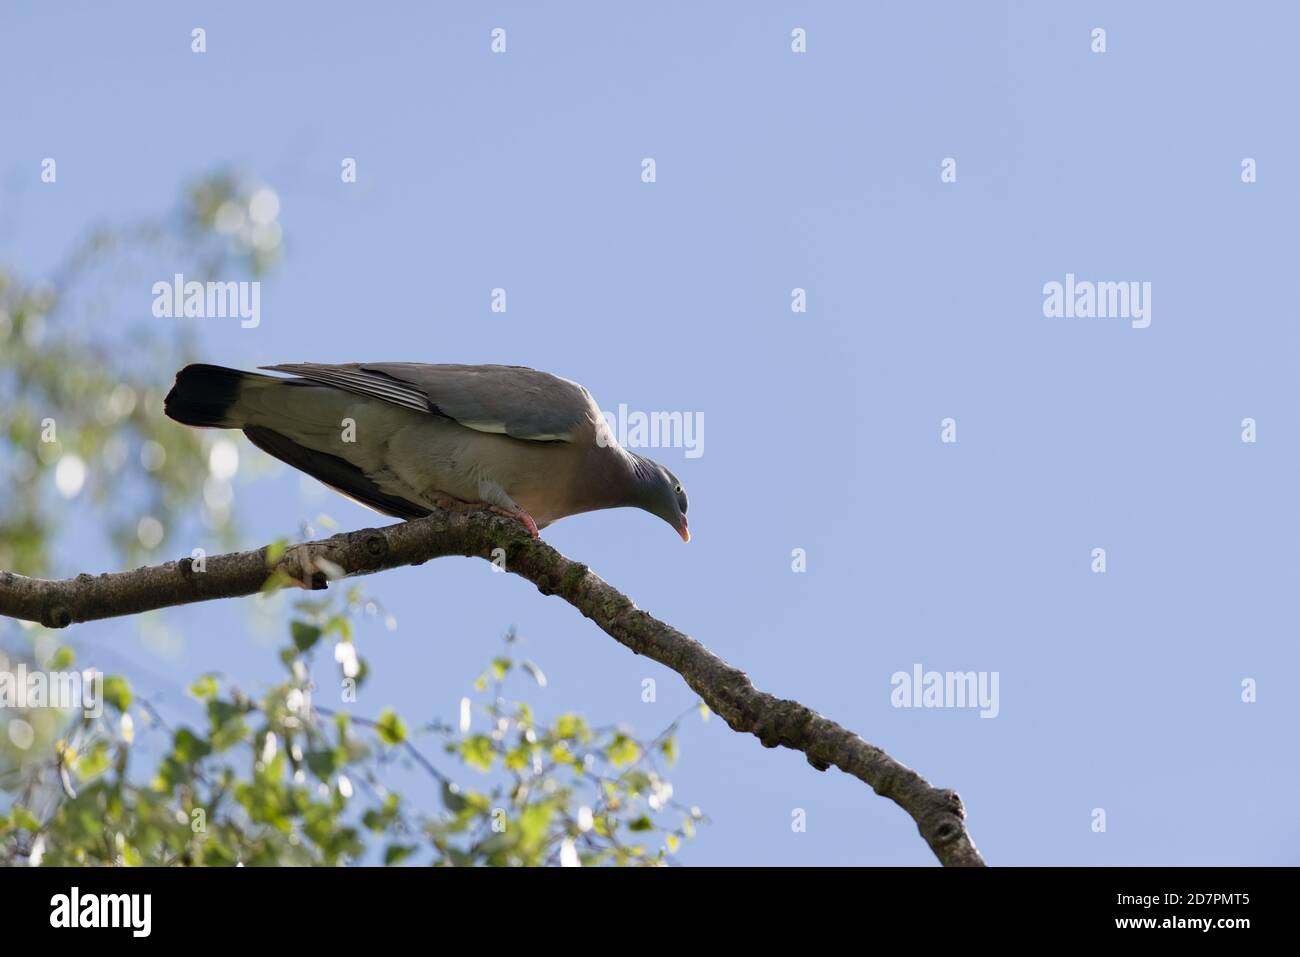 Sous la vue de la neath d'un pigeon de bois sauvage situé sur le coude d'une branche d'un bouleau argenté. Jour ensoleillé, la lumière du soleil frappe le visage du pigeon et le ciel bleu Banque D'Images